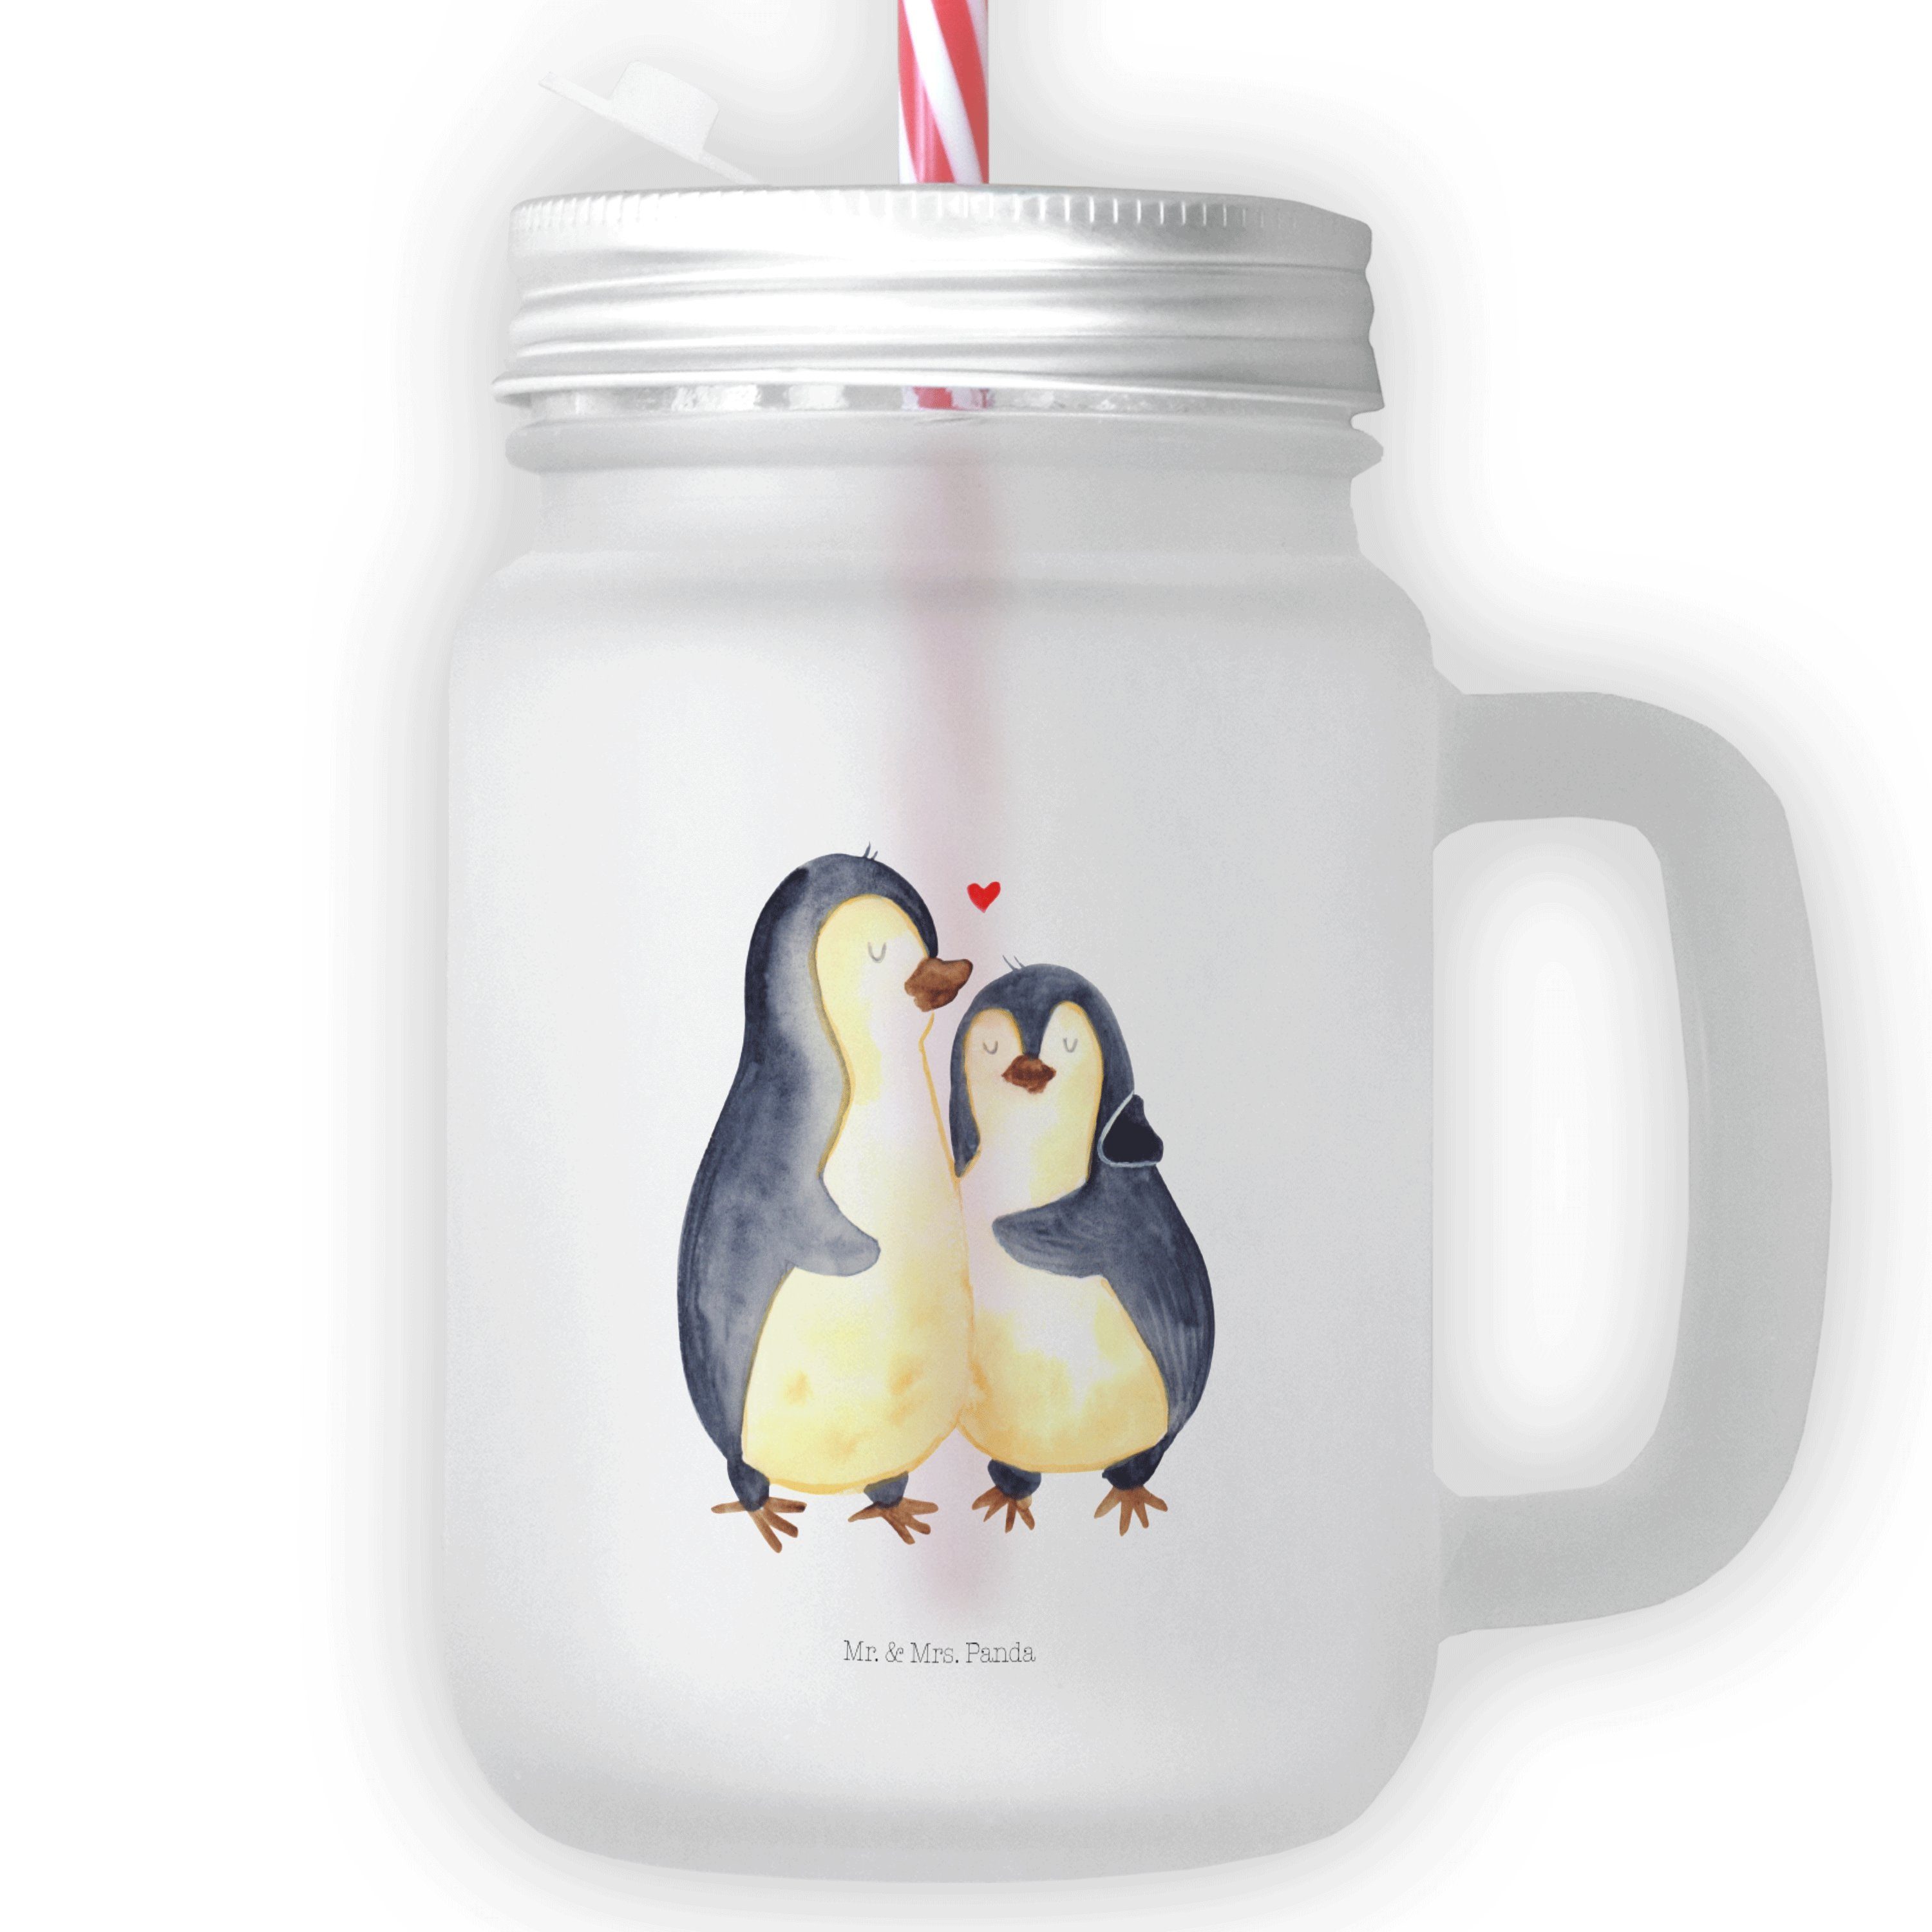 Mr. & Mrs. Panda Cocktailglas Pinguin umarmen - Transparent - Geschenk, glücklich, Sommerglas, Glas, Premium Glas, Inkl. Mehrwegstrohhalm